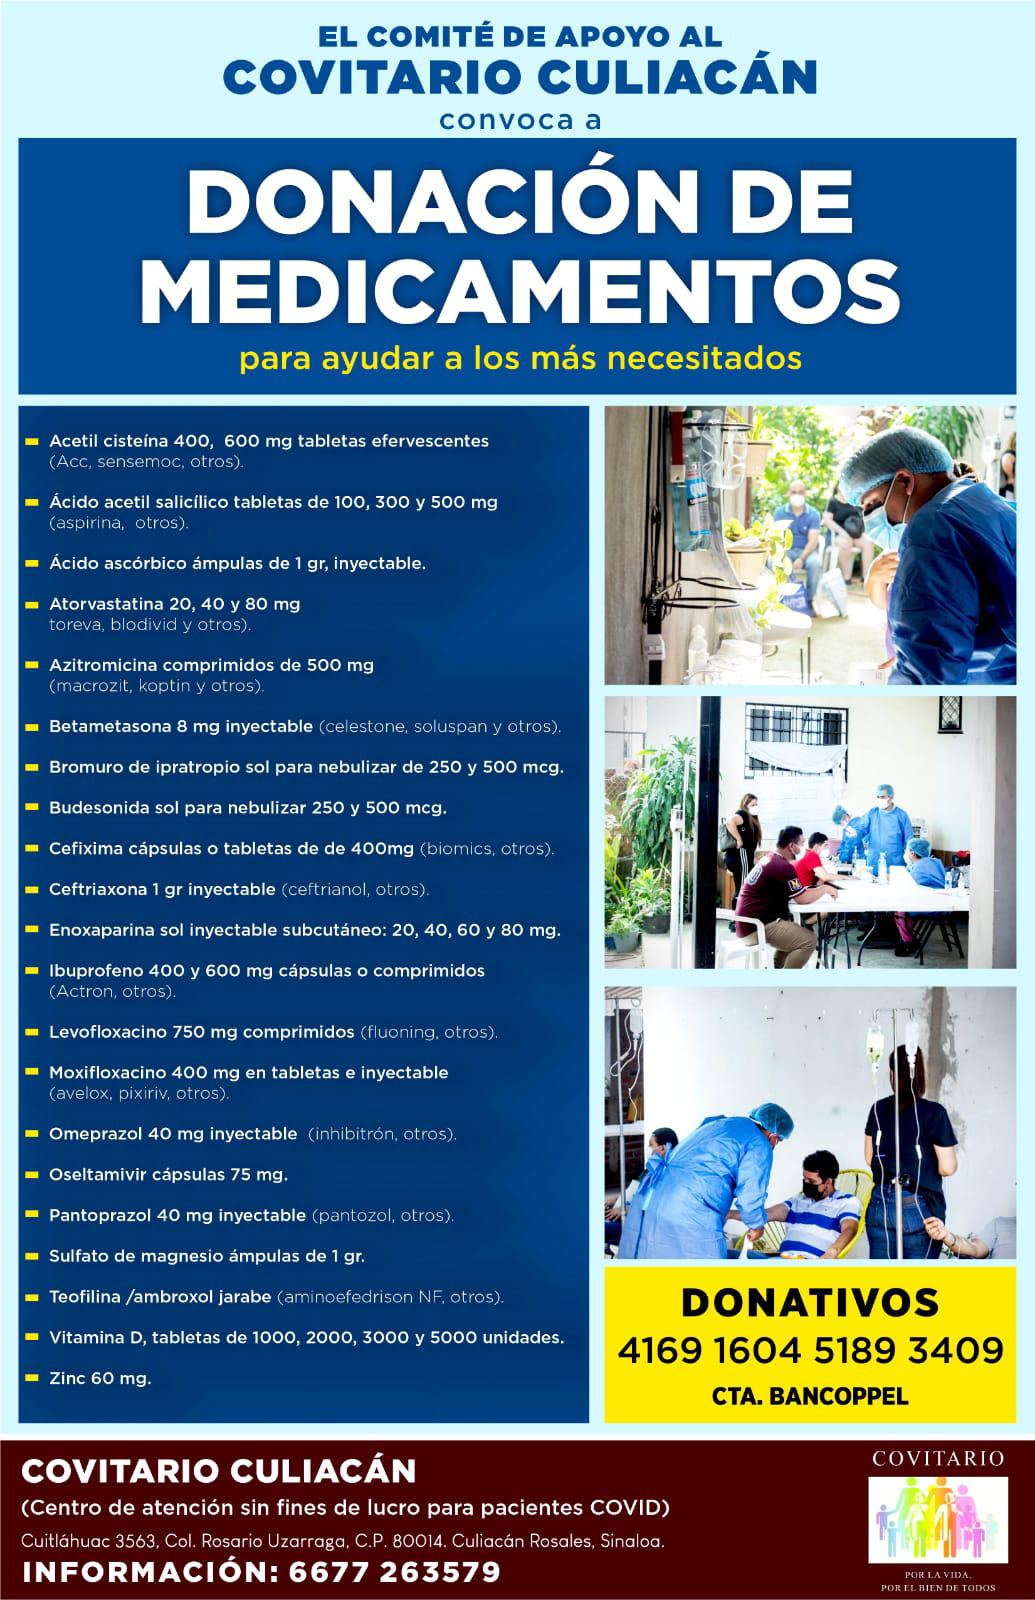 $!Culiacán tiene un Covitario para atender gratuitamente a pacientes con Covid, y solicita ayuda de la ciudadanía